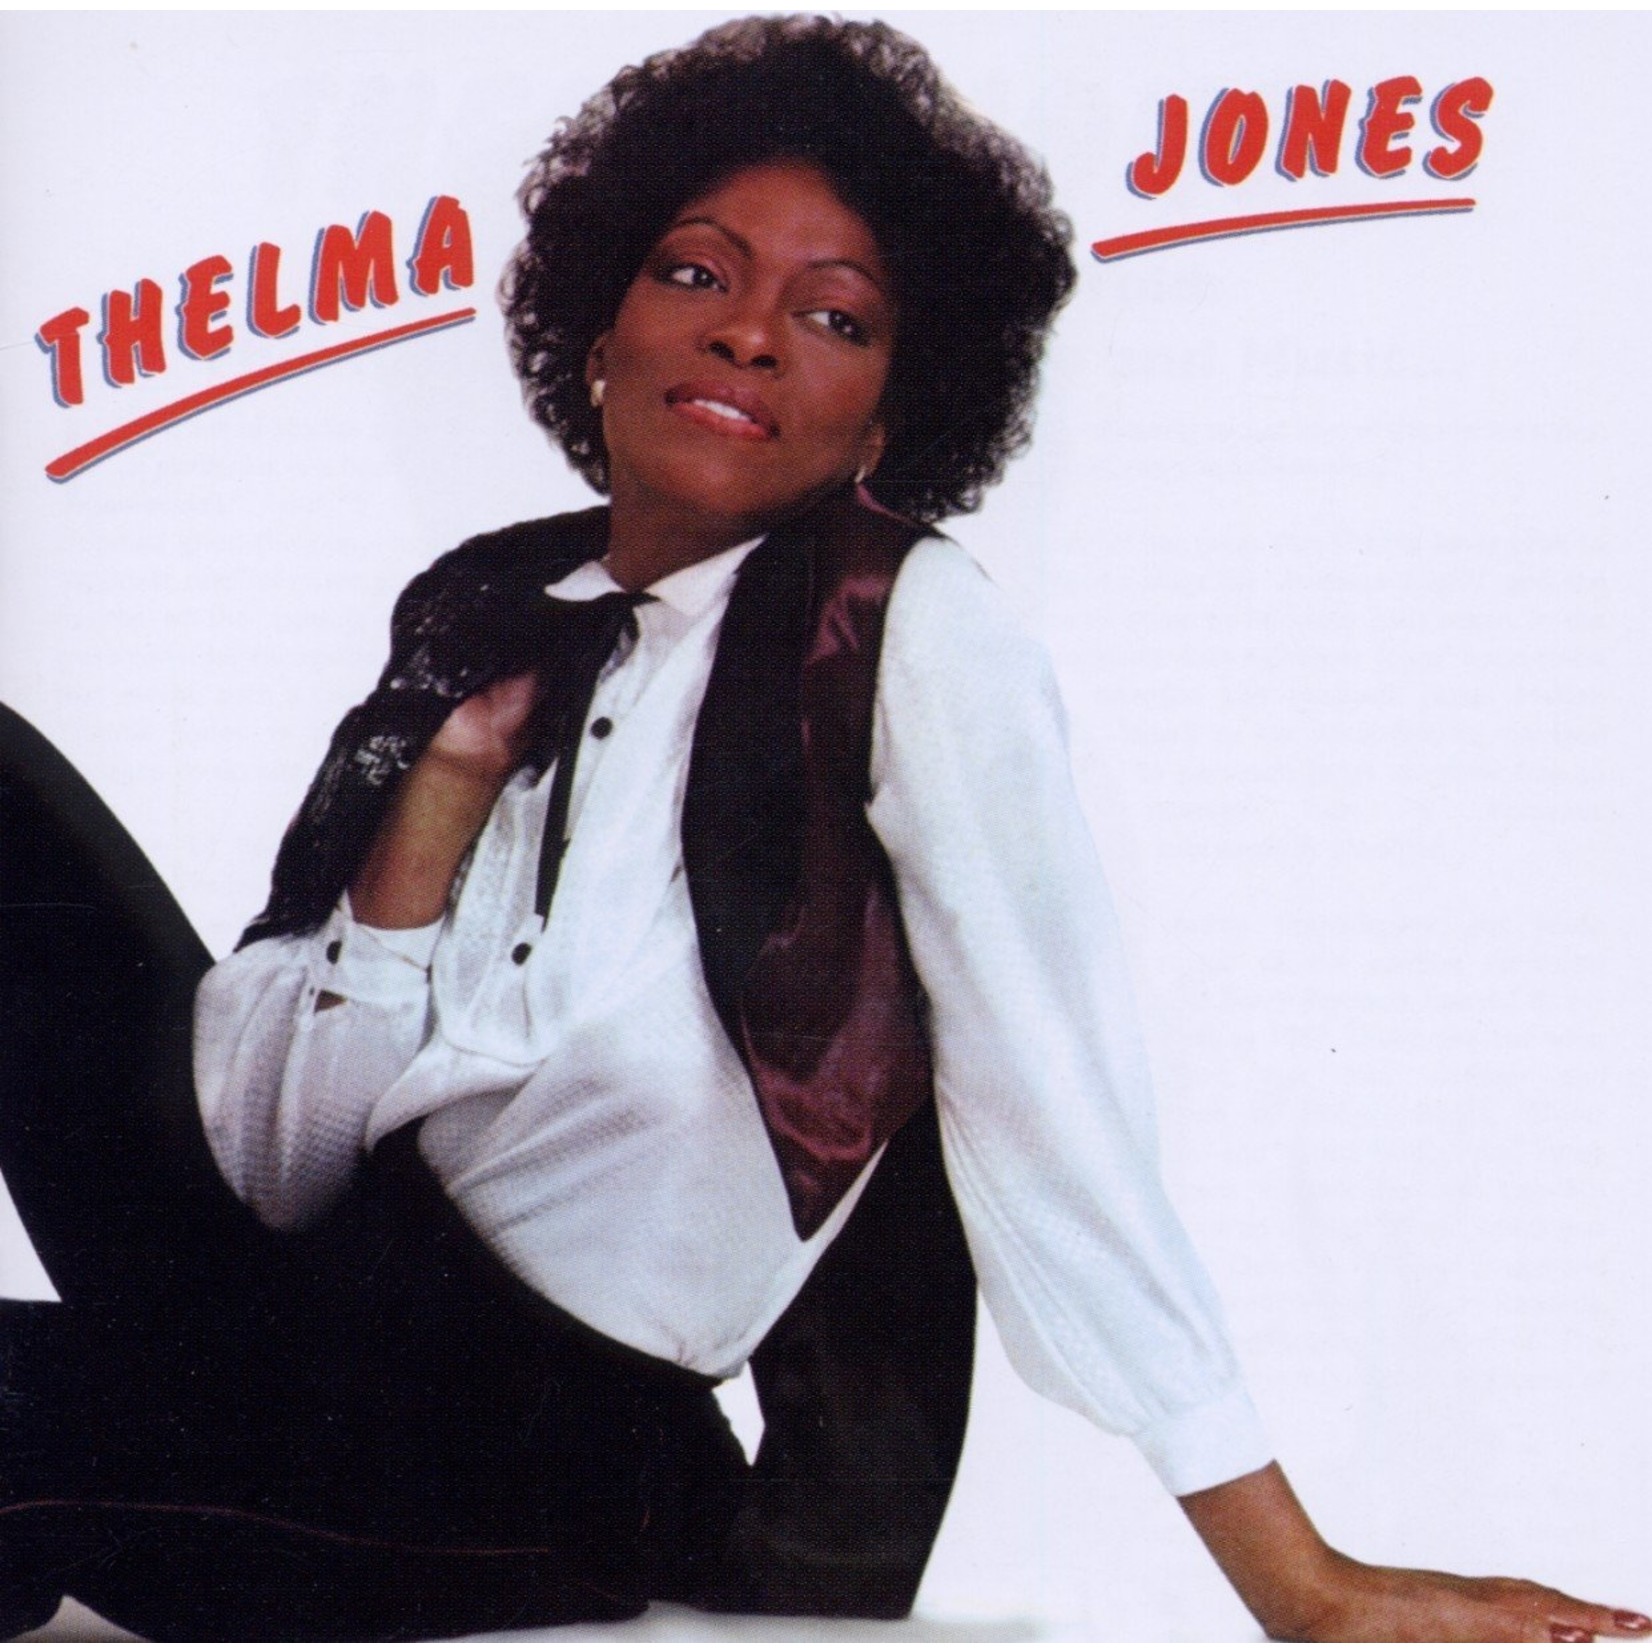 [Vintage] Thelma Jones - self-titled